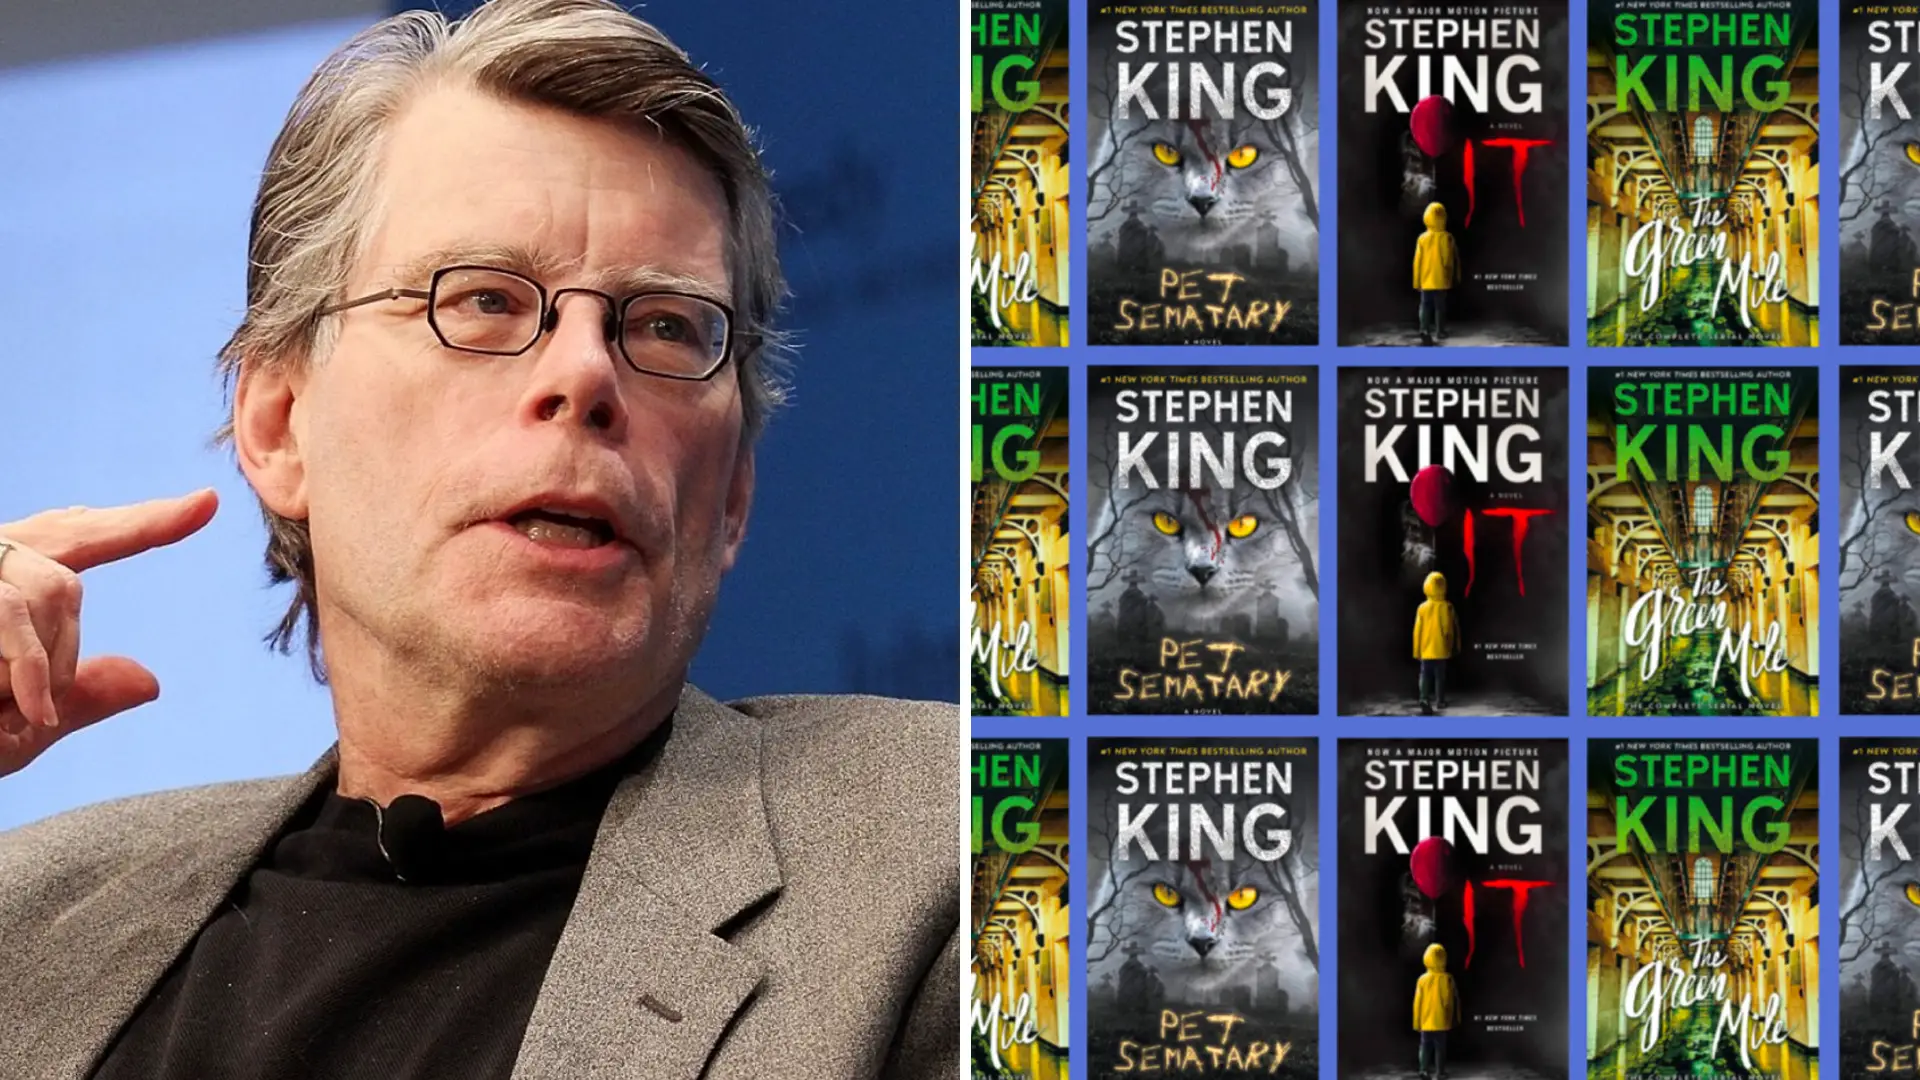 Stephen King Bankruptcy